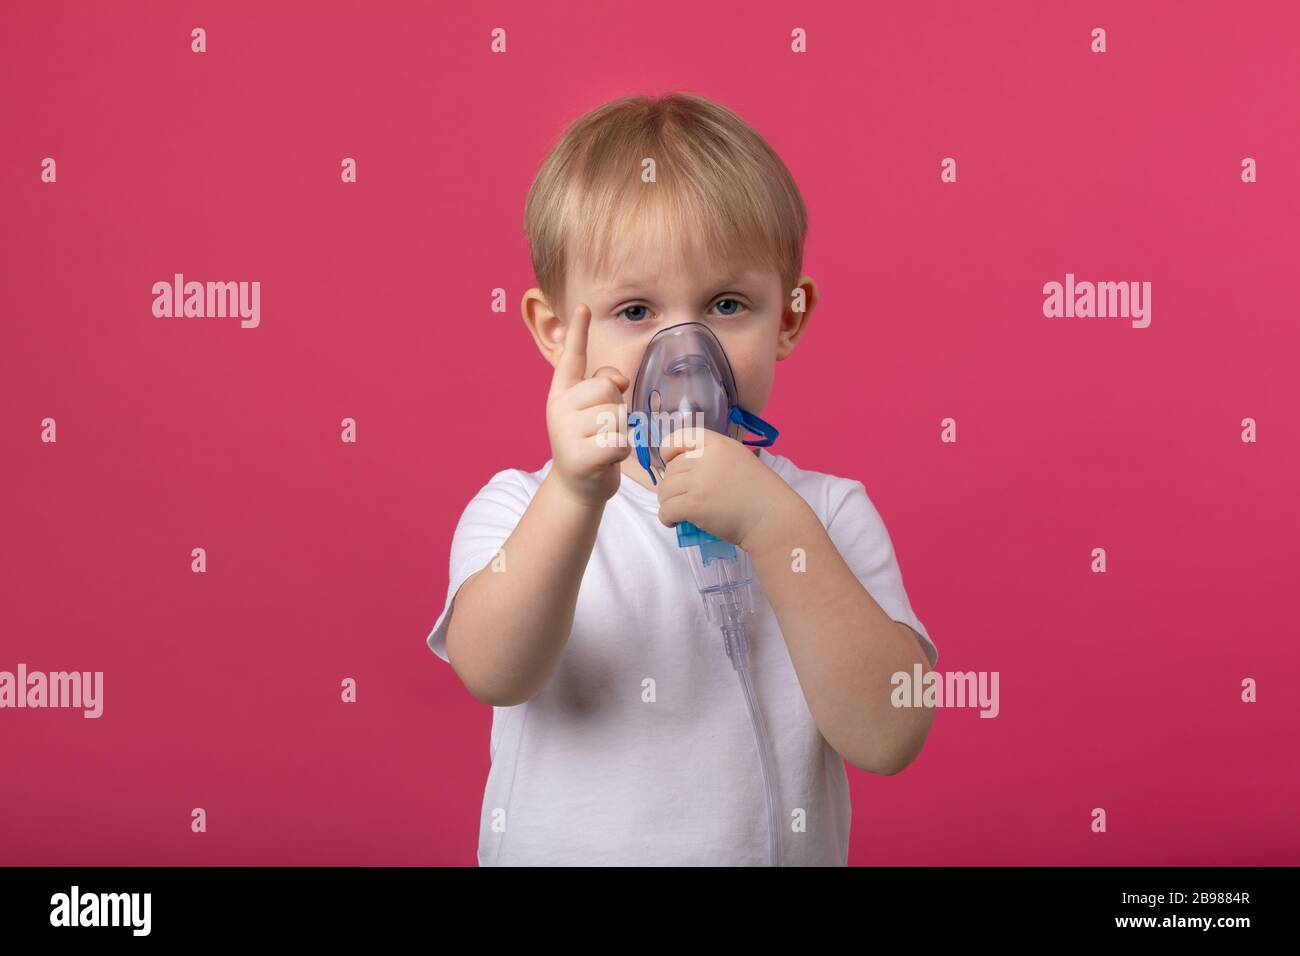 Ein blondes Kind mit einem Inhalator in der Hand, der an seinem Mund befestigt ist, zeigt einen Finger auf einem einfarbig rosafarbenen Hintergrund. Studiofotografie für medizinische Themen von t Stockfoto